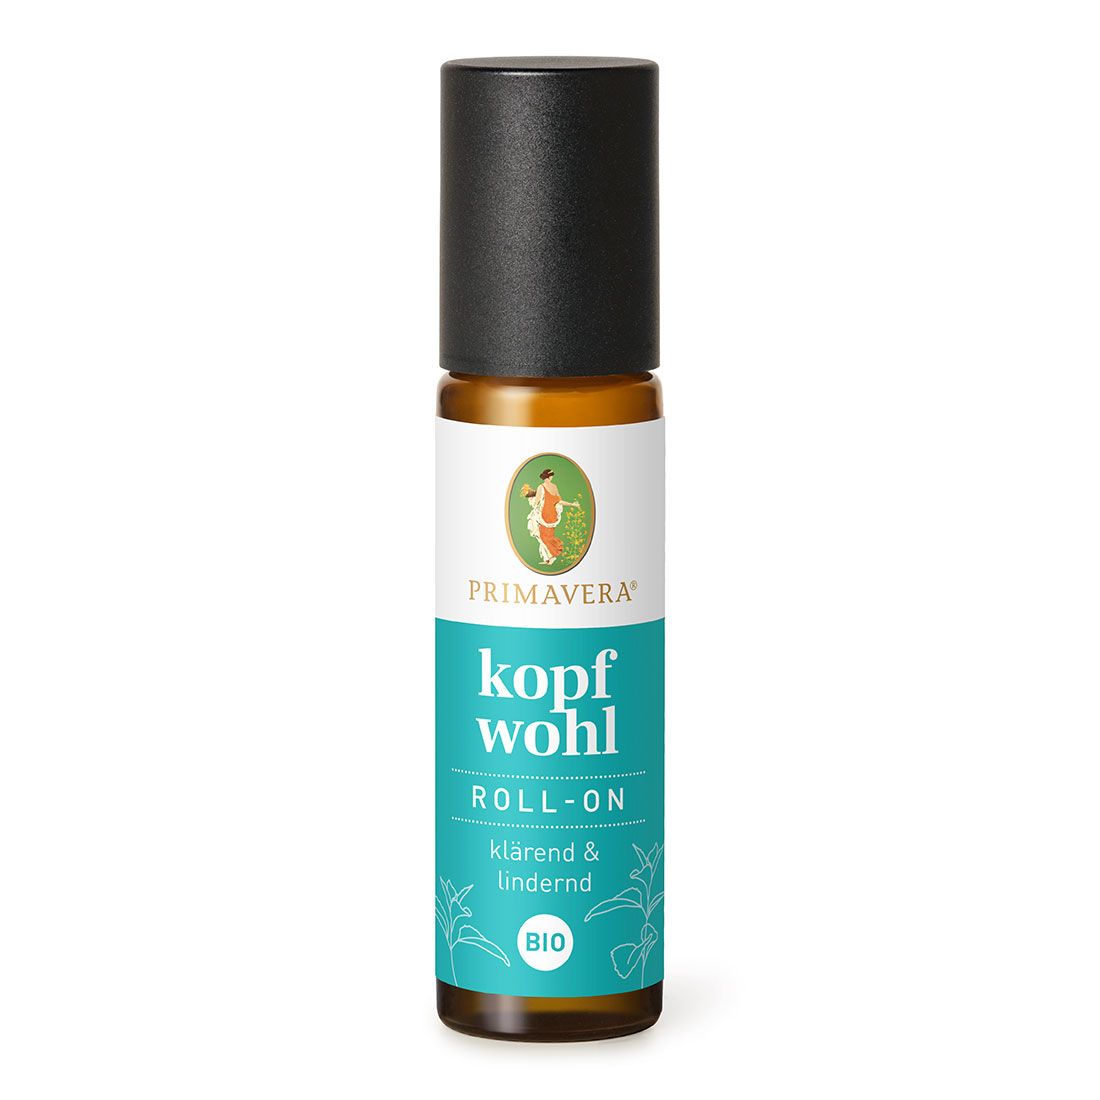 Primavera Kopfwohl Roll-On bio - Органическое ароматическое масло мяты при головных болях и мигрени, 10 мл.